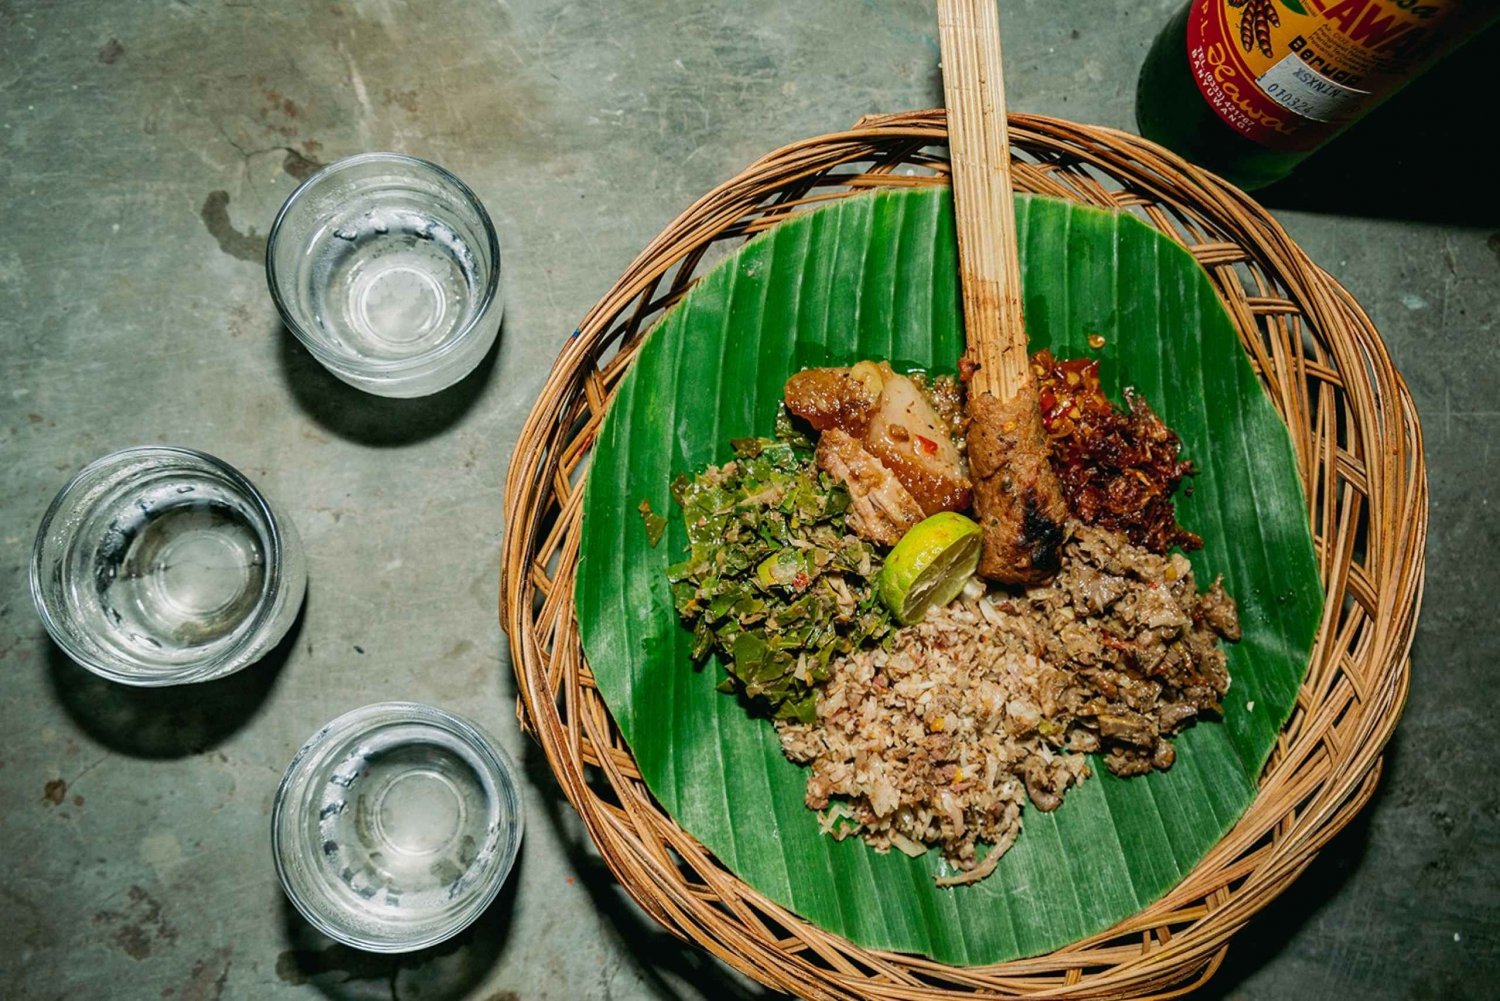 Bali Bites -ruokakierros, jossa on 15+ maistiaista